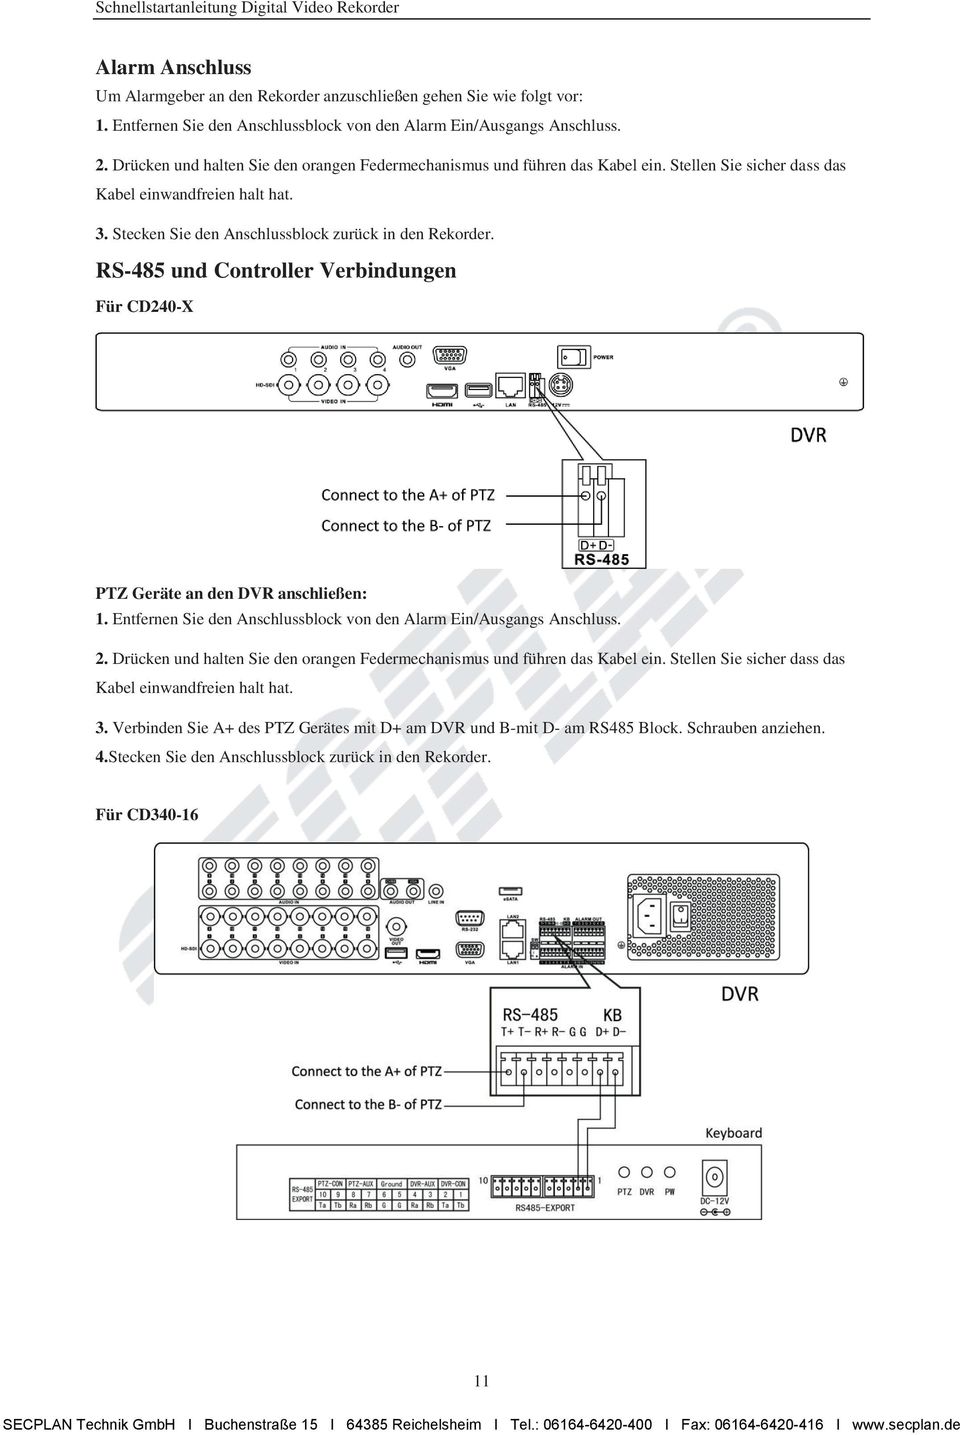 RS-485 und Controller Verbindungen Für CD240-X PTZ Geräte an den DVR anschließen: 1. Entfernen Sie den Anschlussblock von den Alarm Ein/Ausgangs Anschluss. 2.